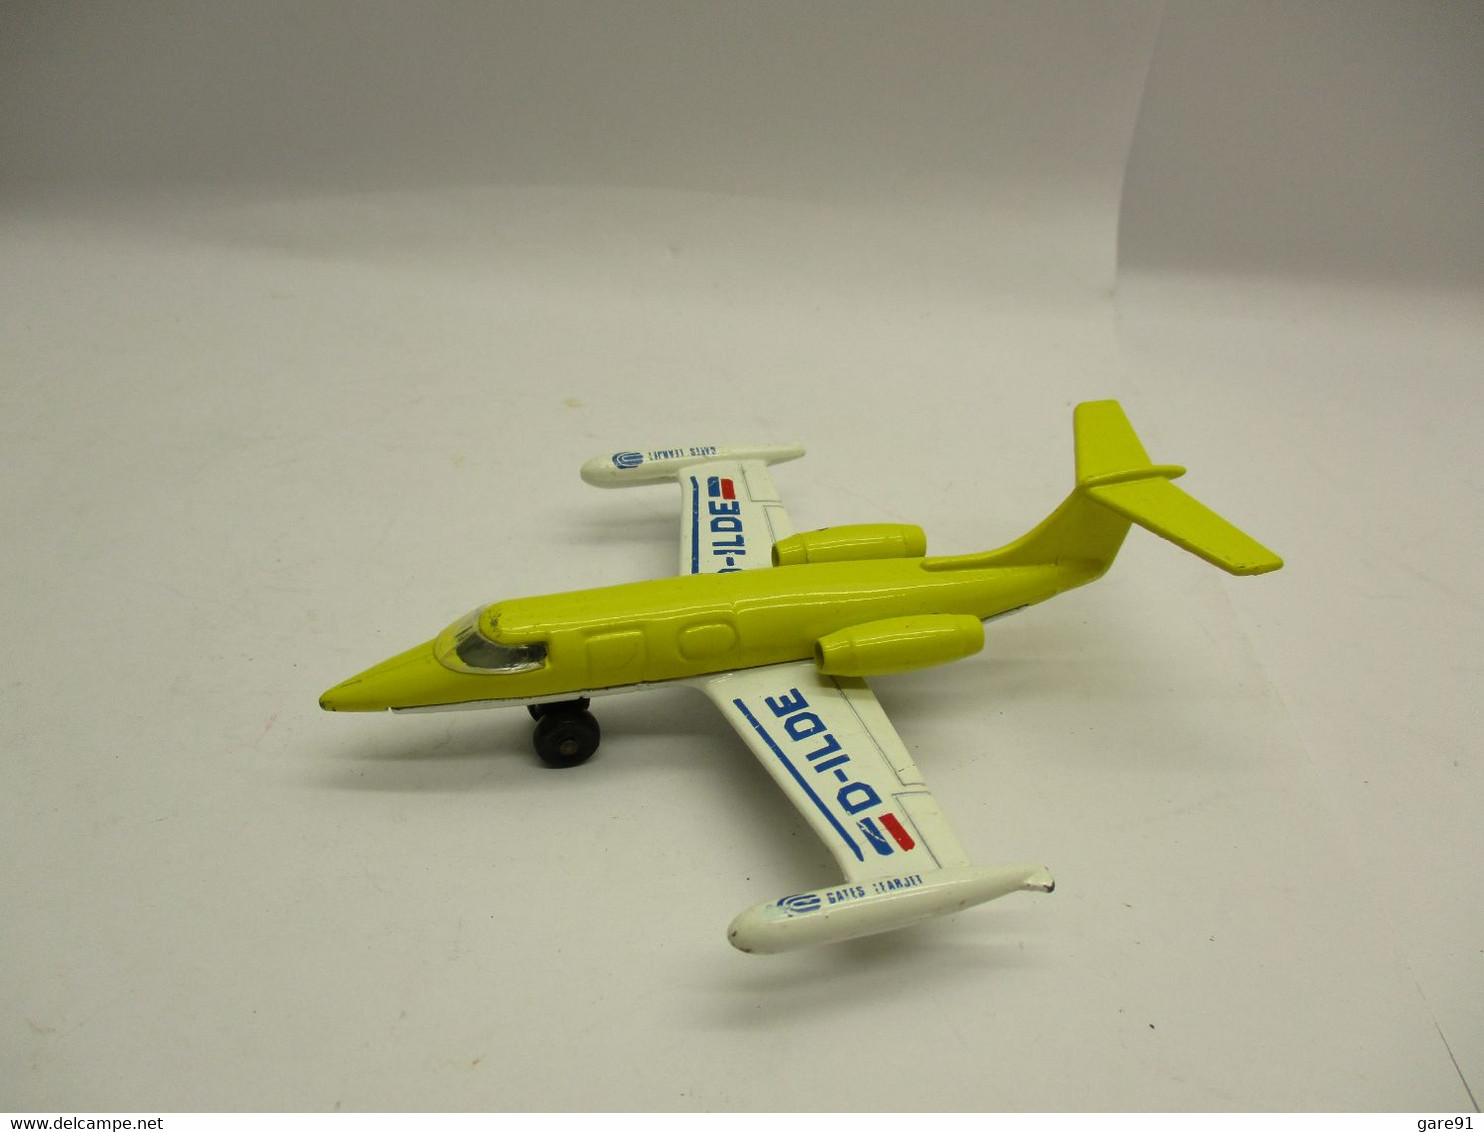 Matchbox Learjet - Luchtvaart